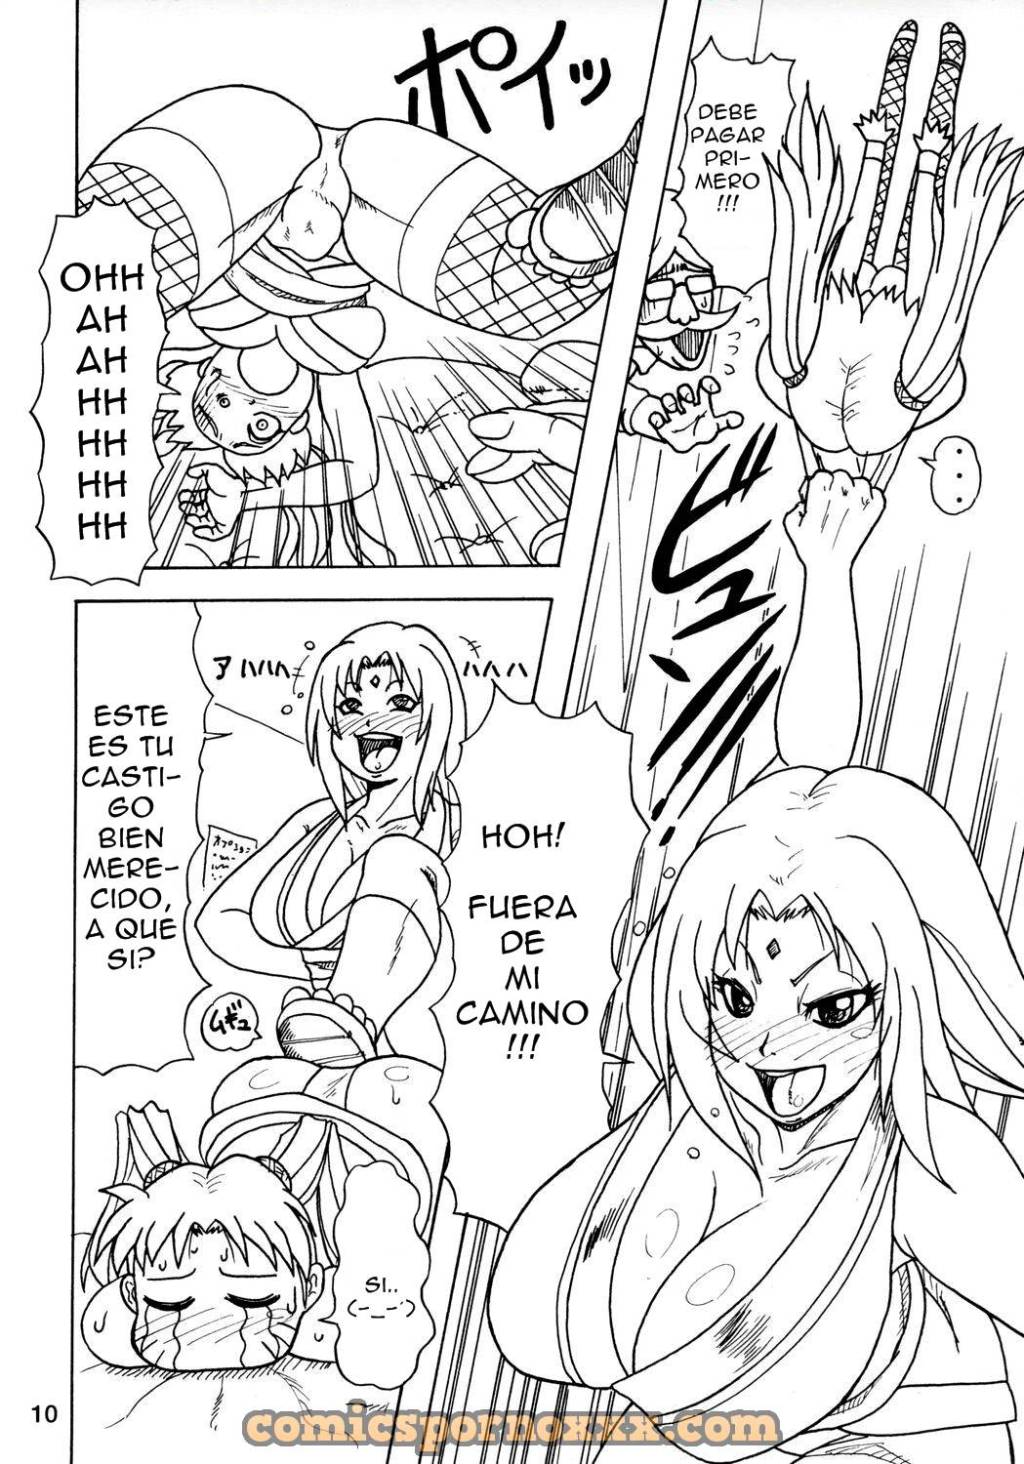 Kunoichi Style Max Speed (Futanari de Naruko y Tsunade) - 6 - Comics Porno - Hentai Manga - Cartoon XXX